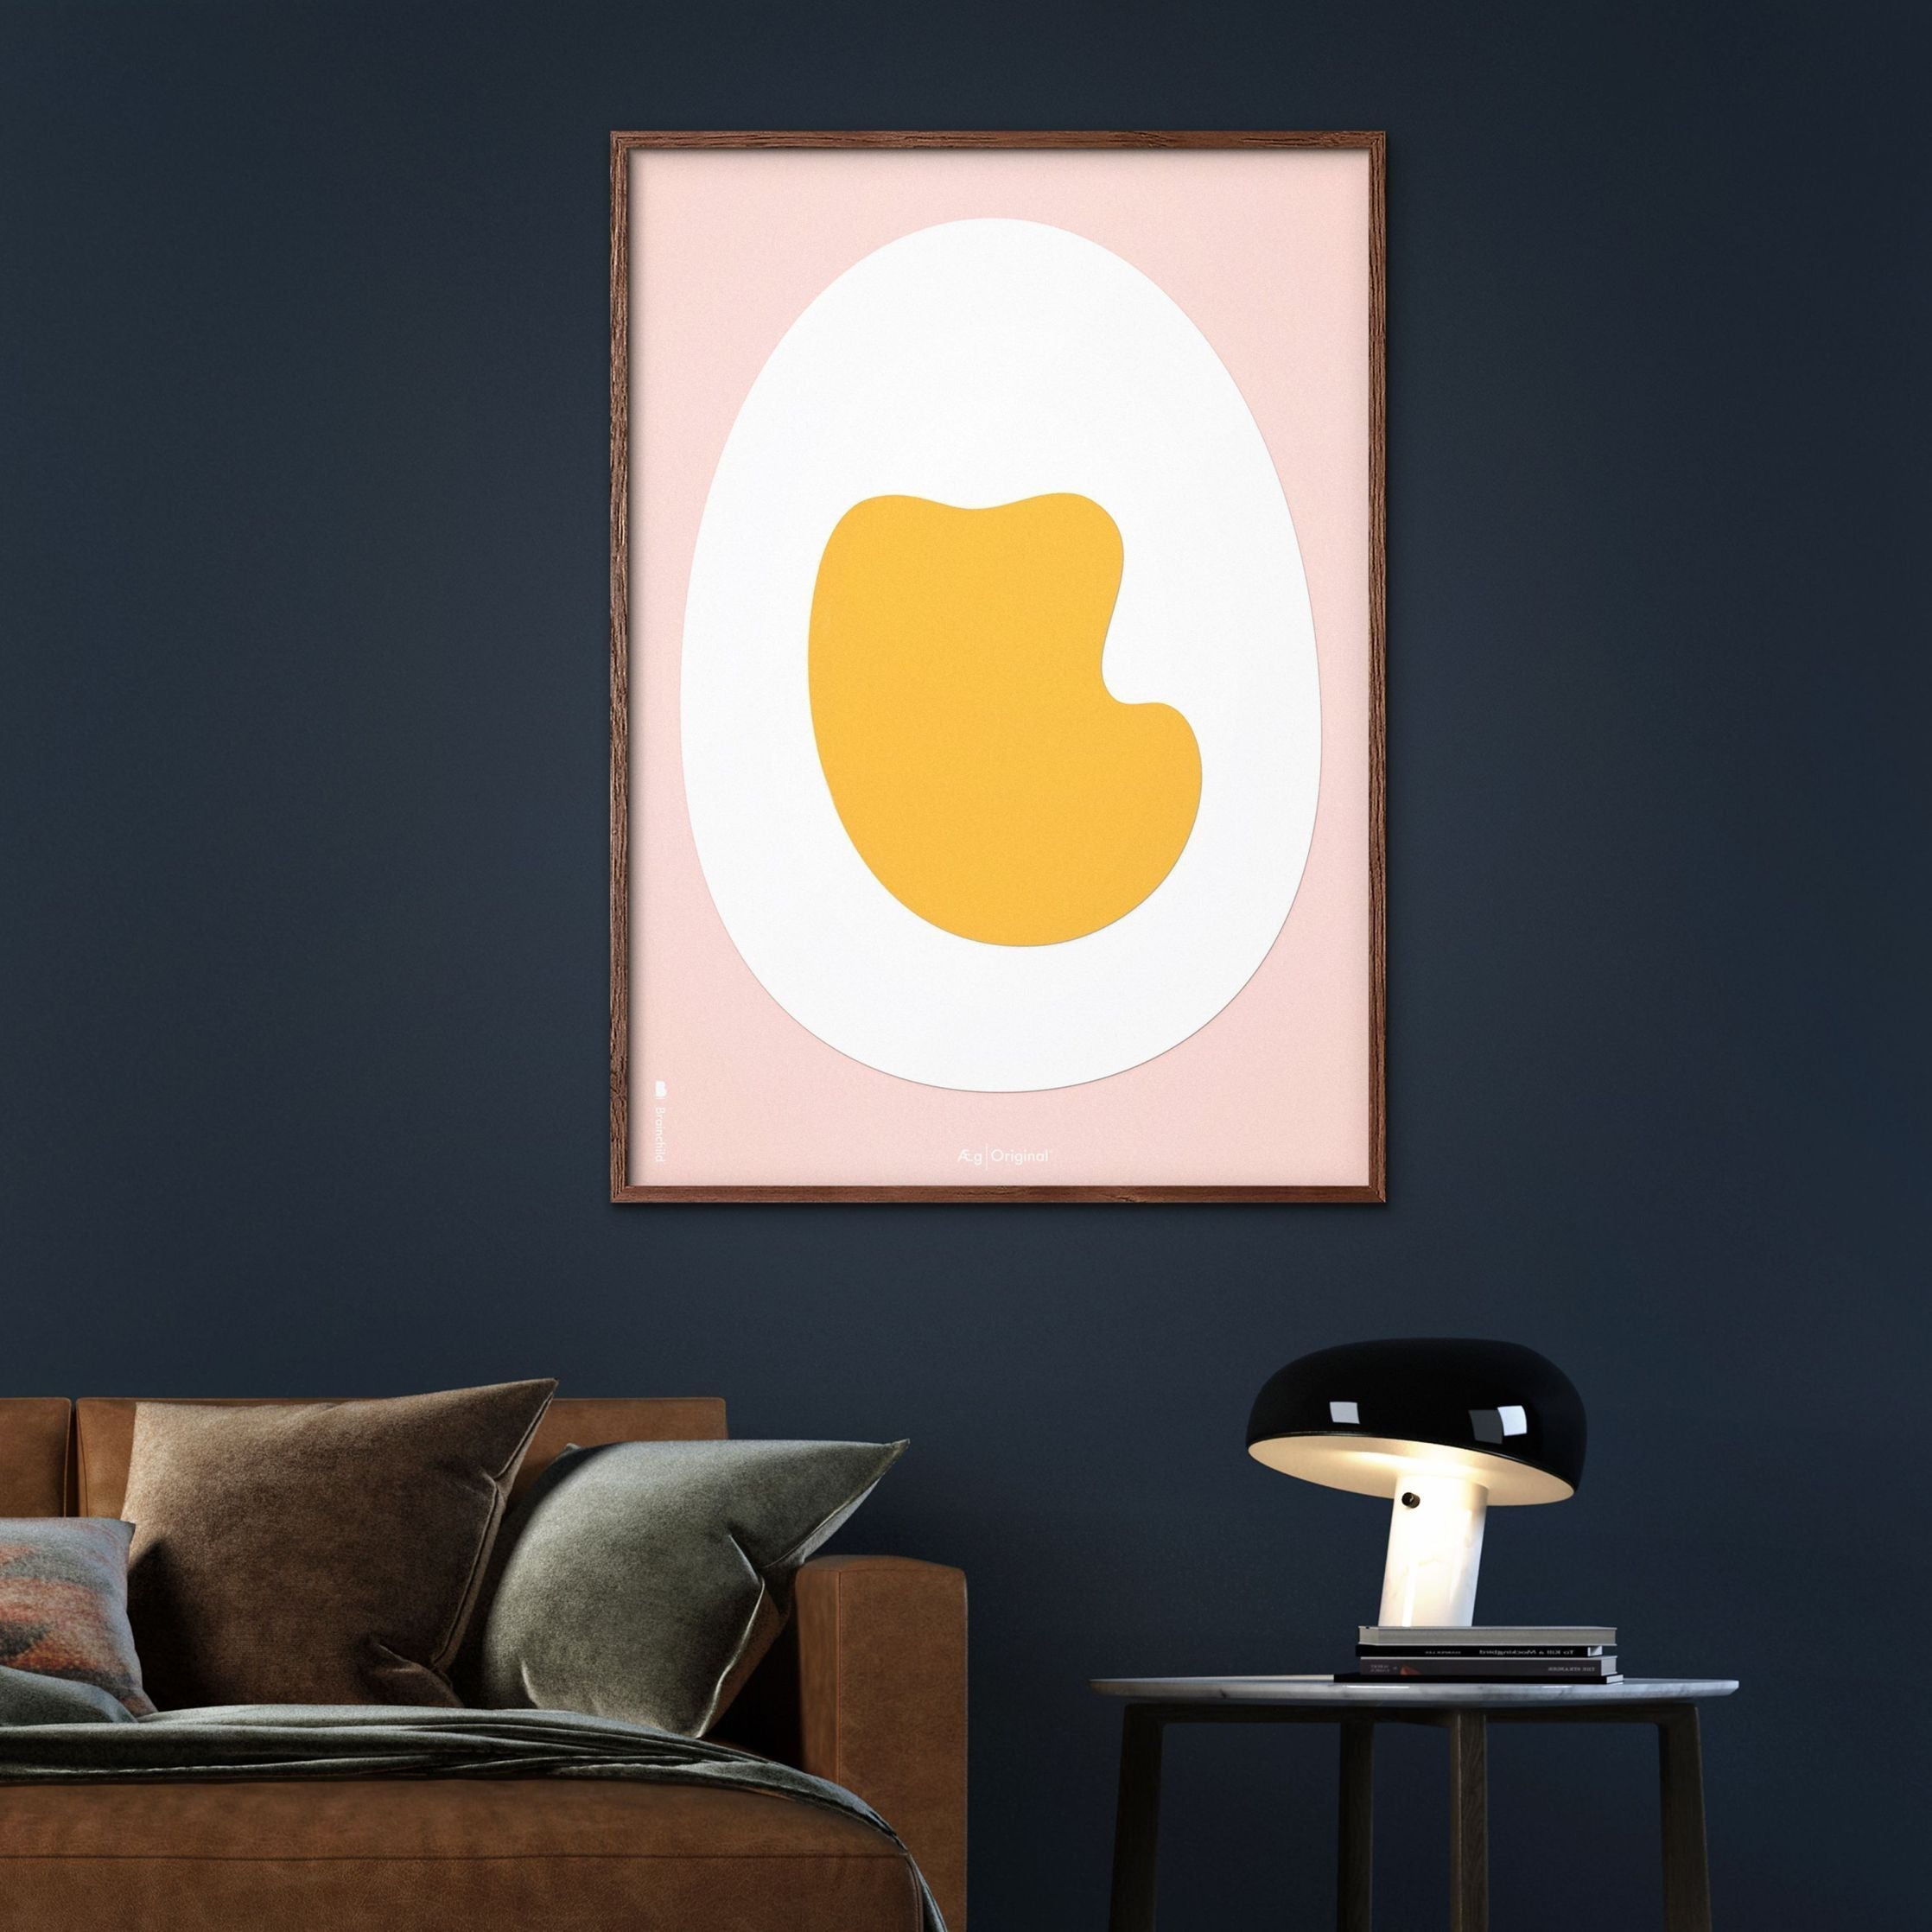 Brainchild Egg Paper Clip plakát mosazný barevný rám A5, růžové pozadí